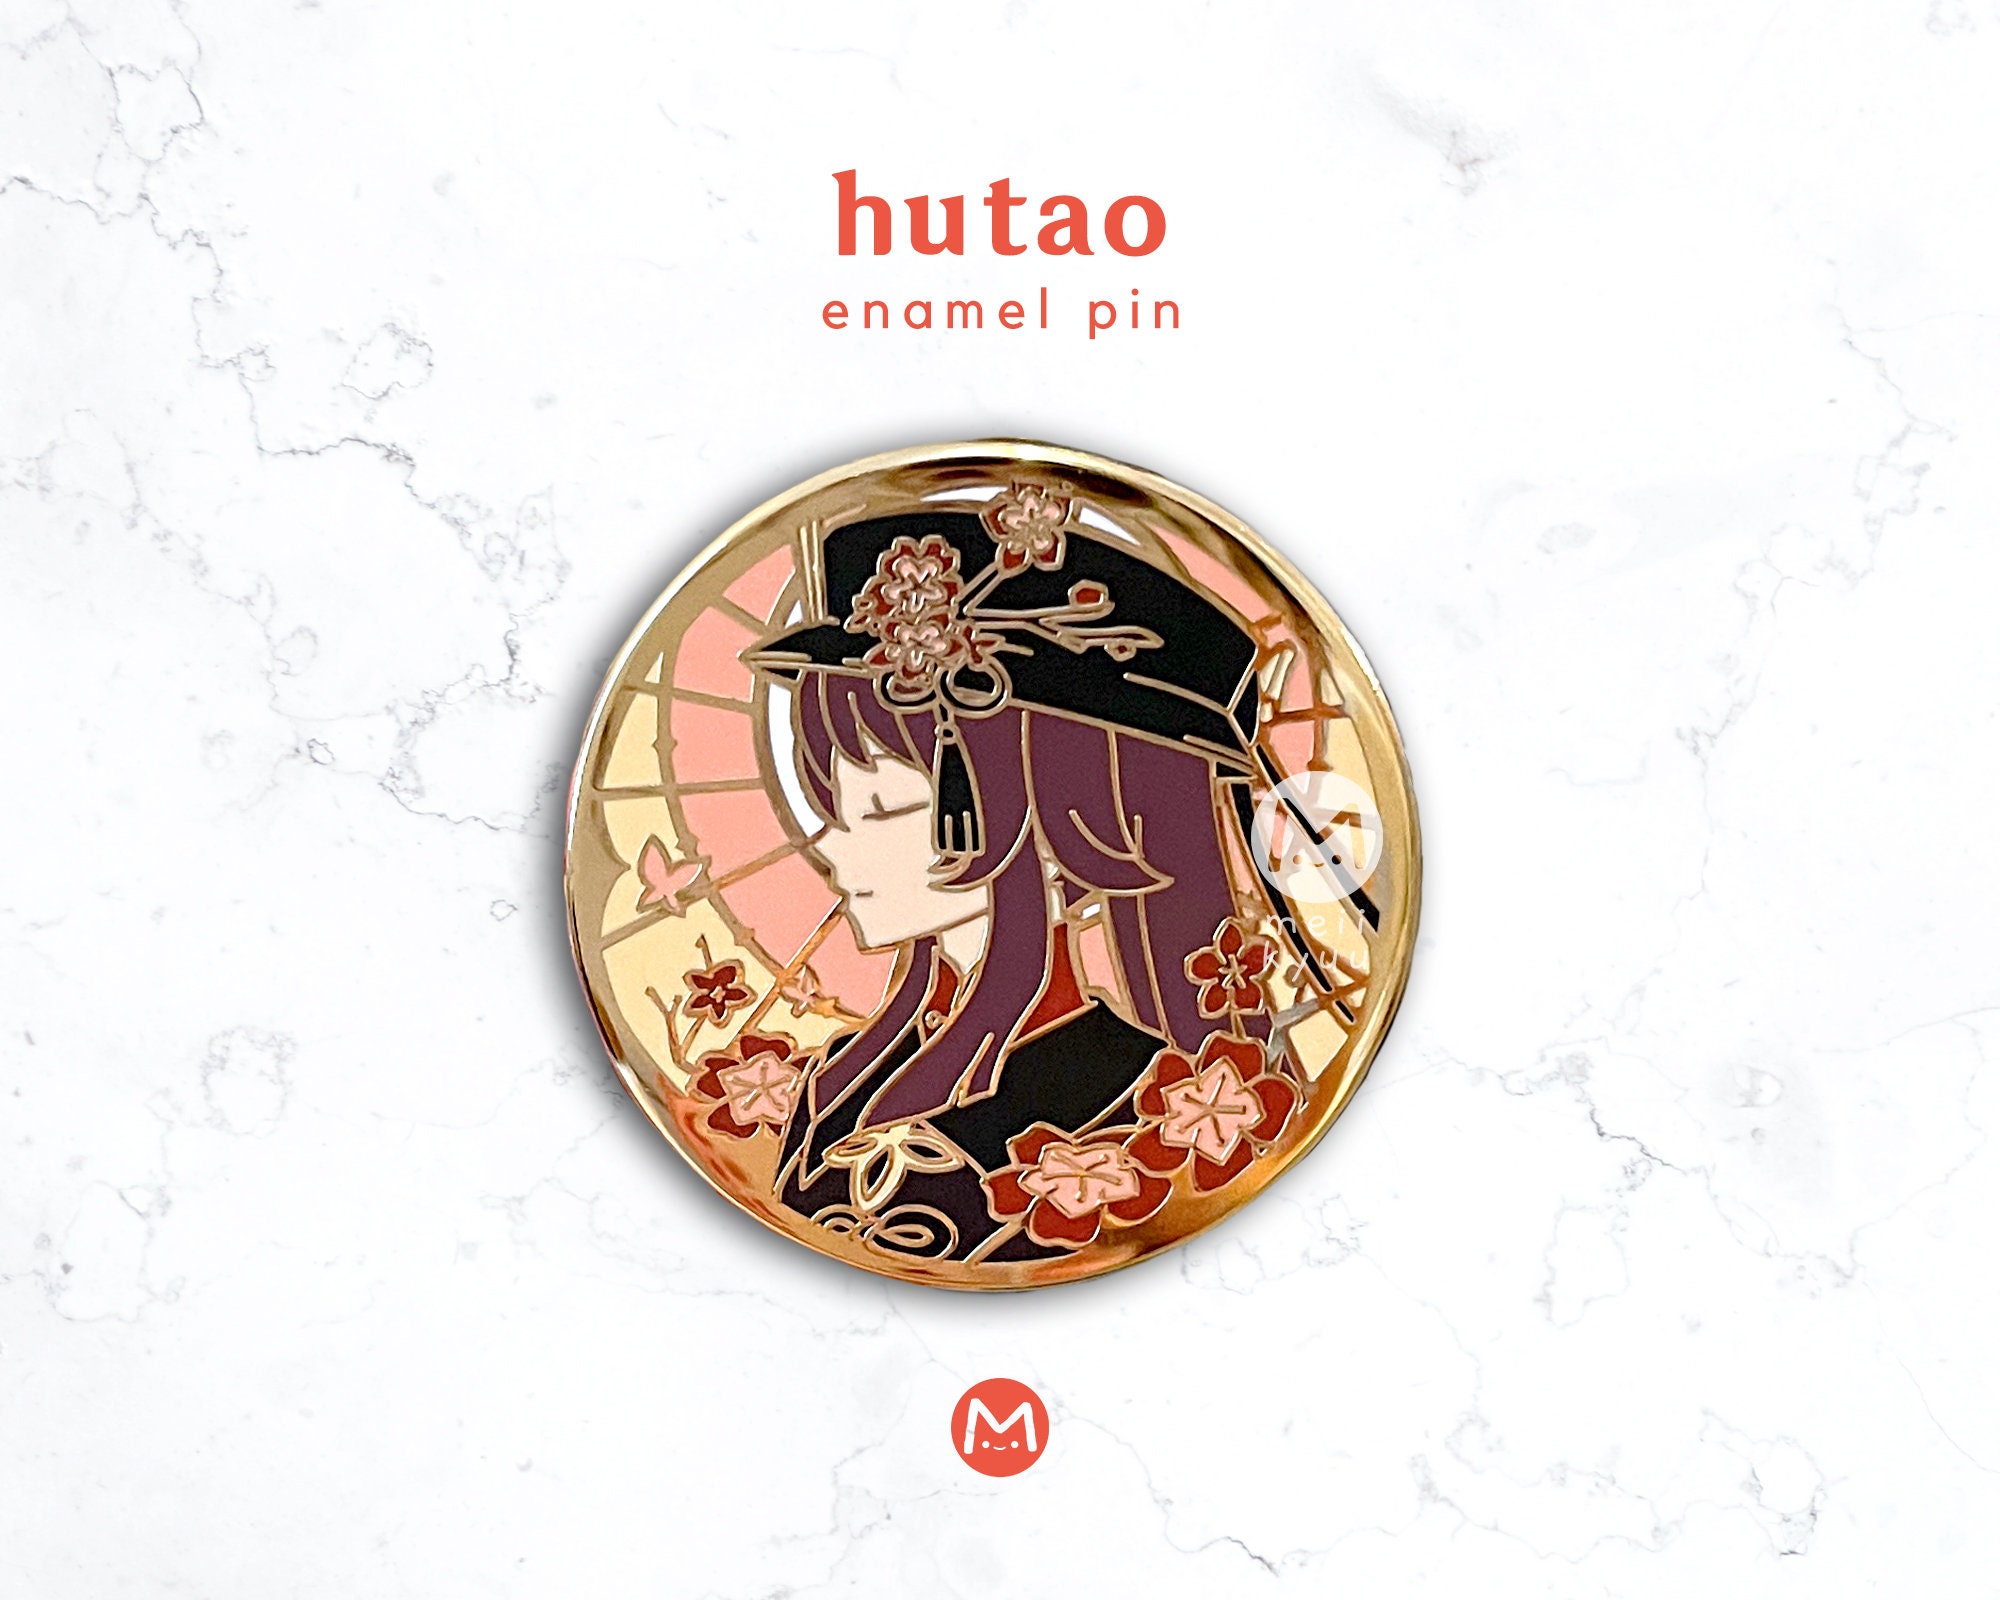 Genshin Hutao Pin for Sale by TowaCat